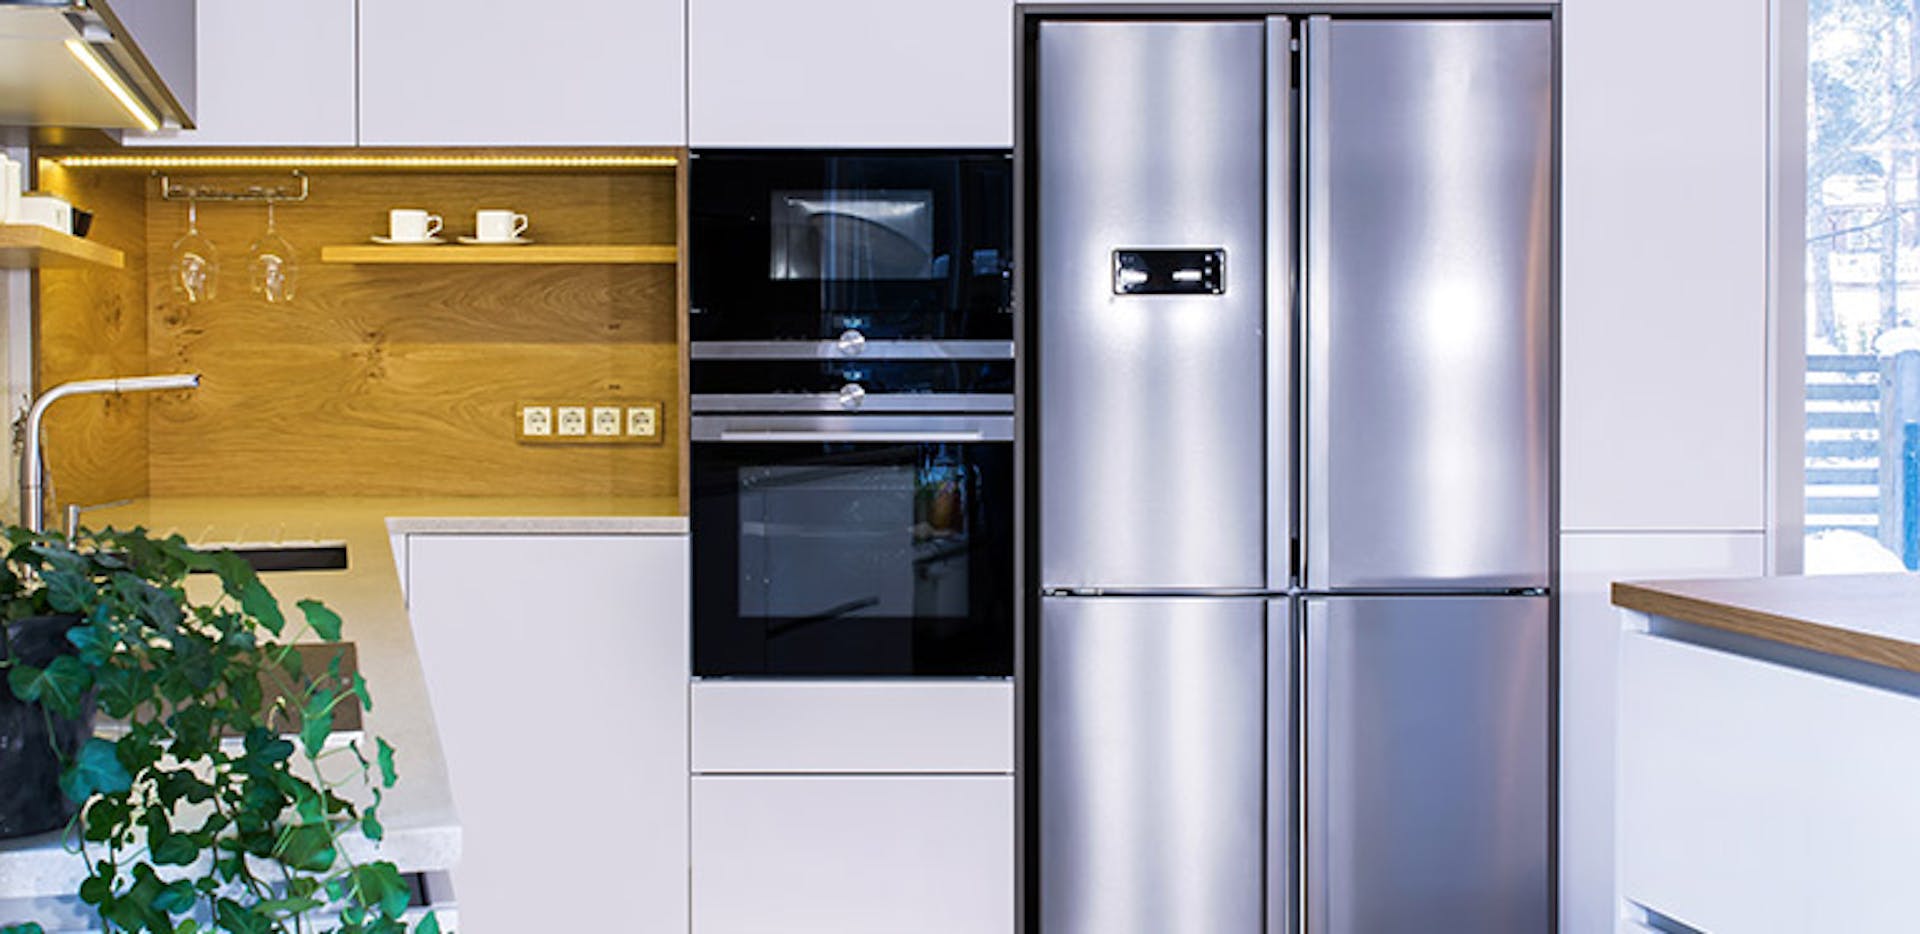 Comparatif réfrigérateur : lequel choisir ?